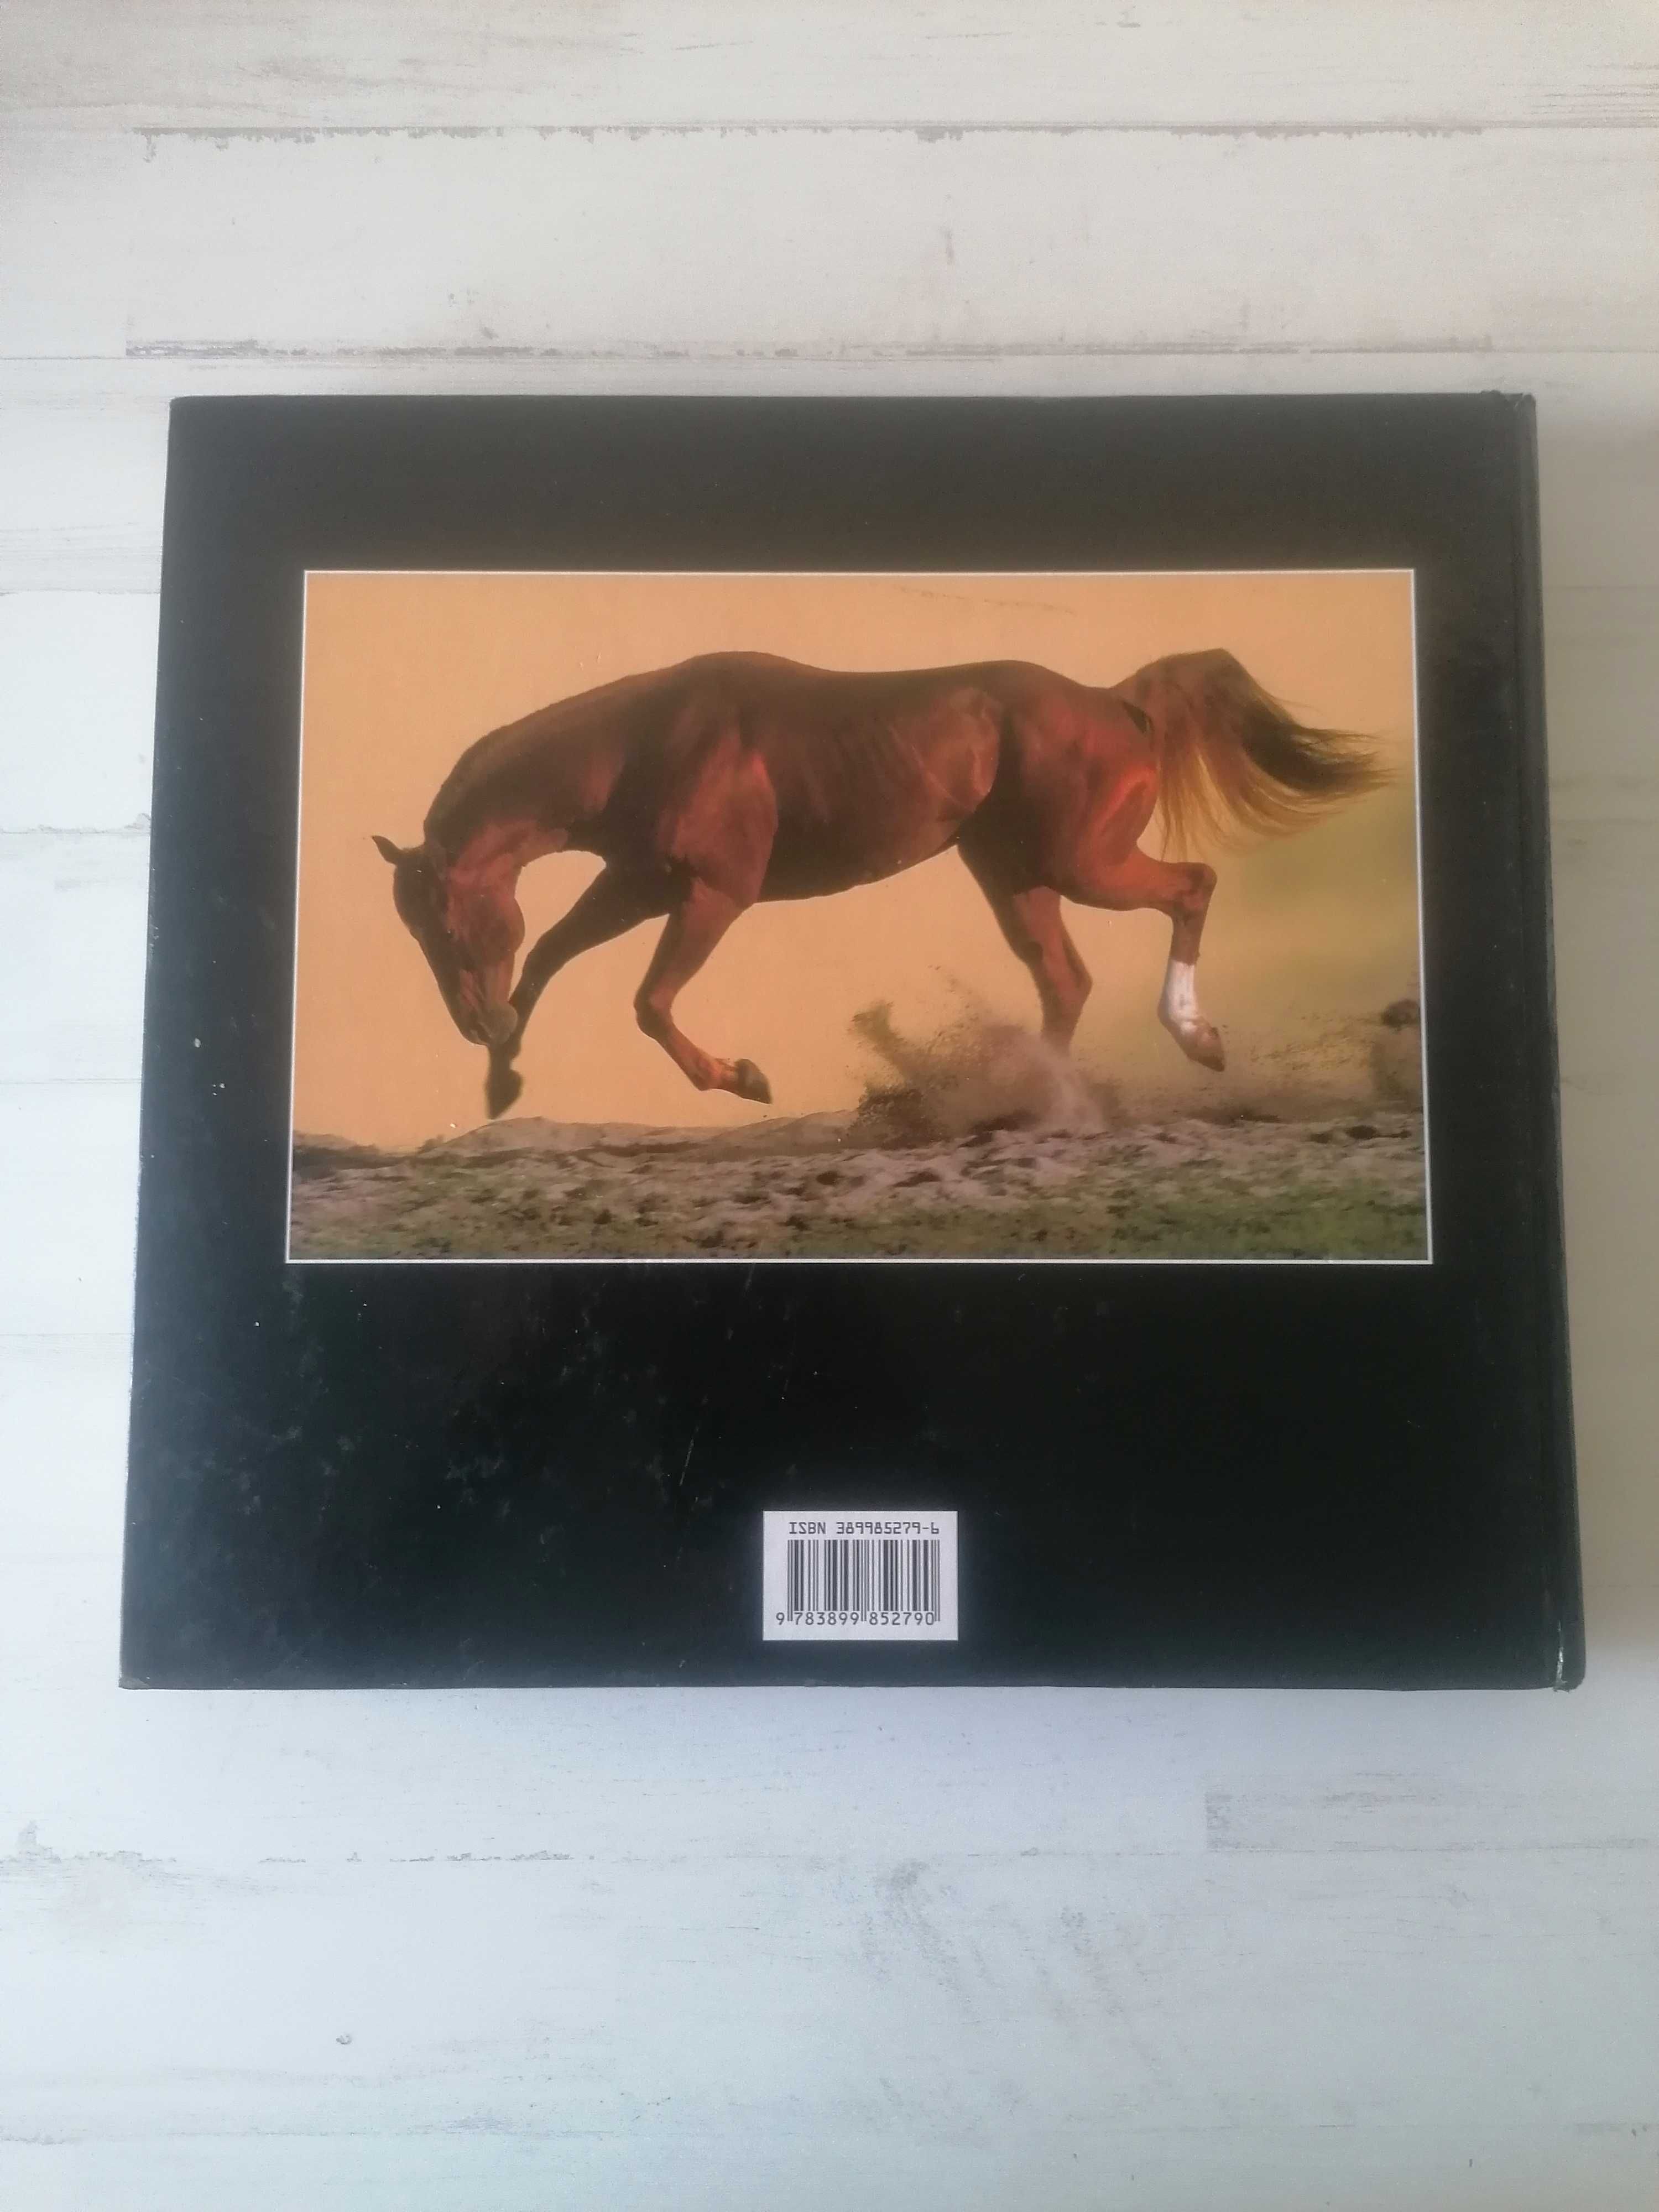 Livro Fascinación Caballo Espanhol Cavalos Equitação